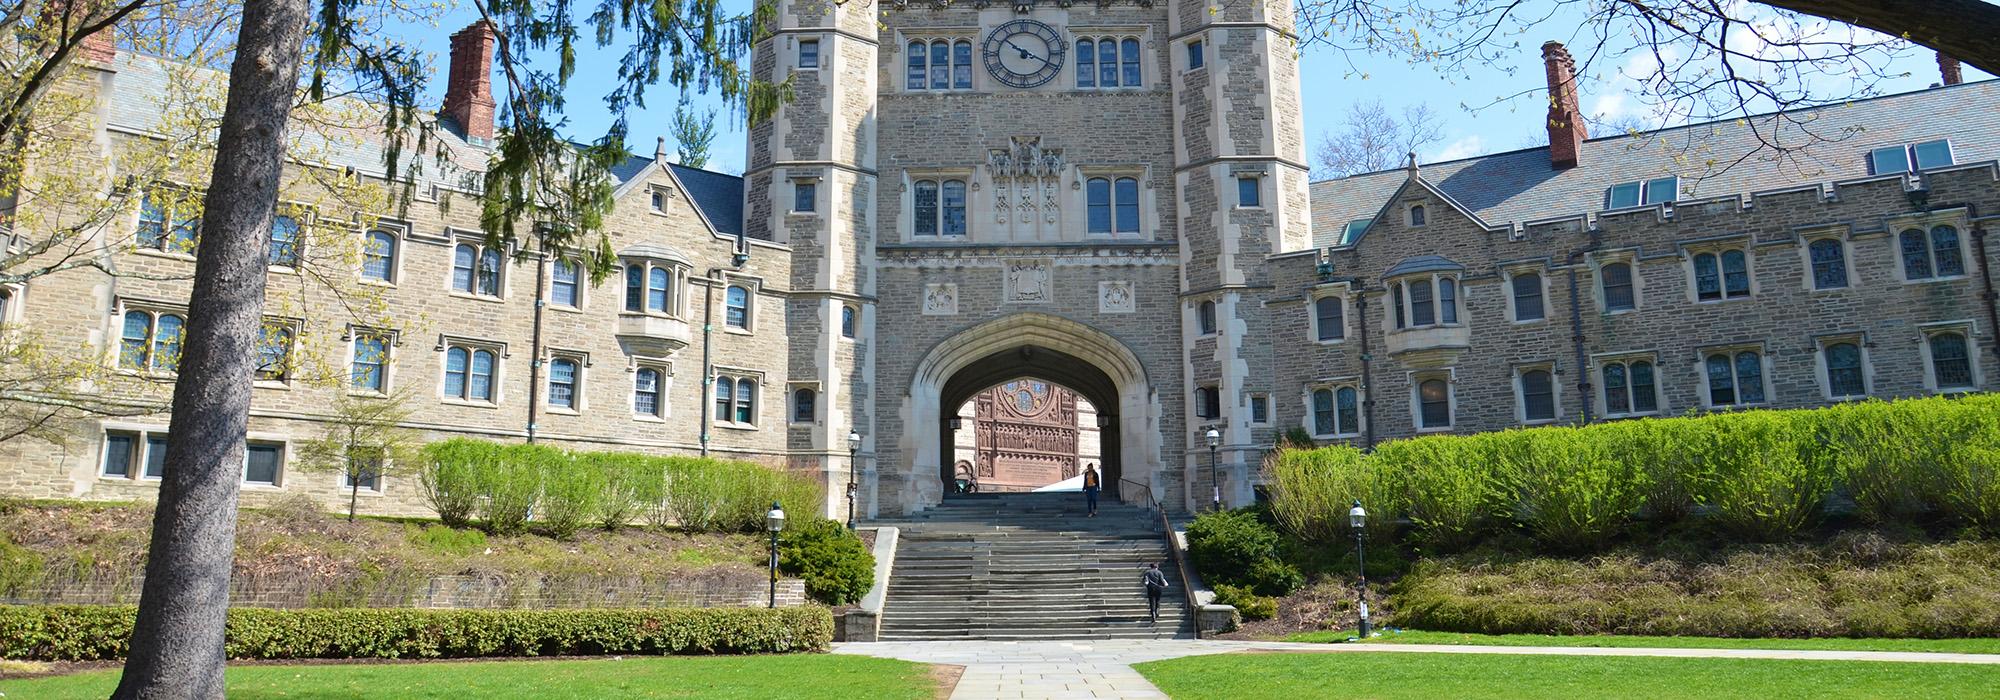 Blair Hall, Princeton University, NJ